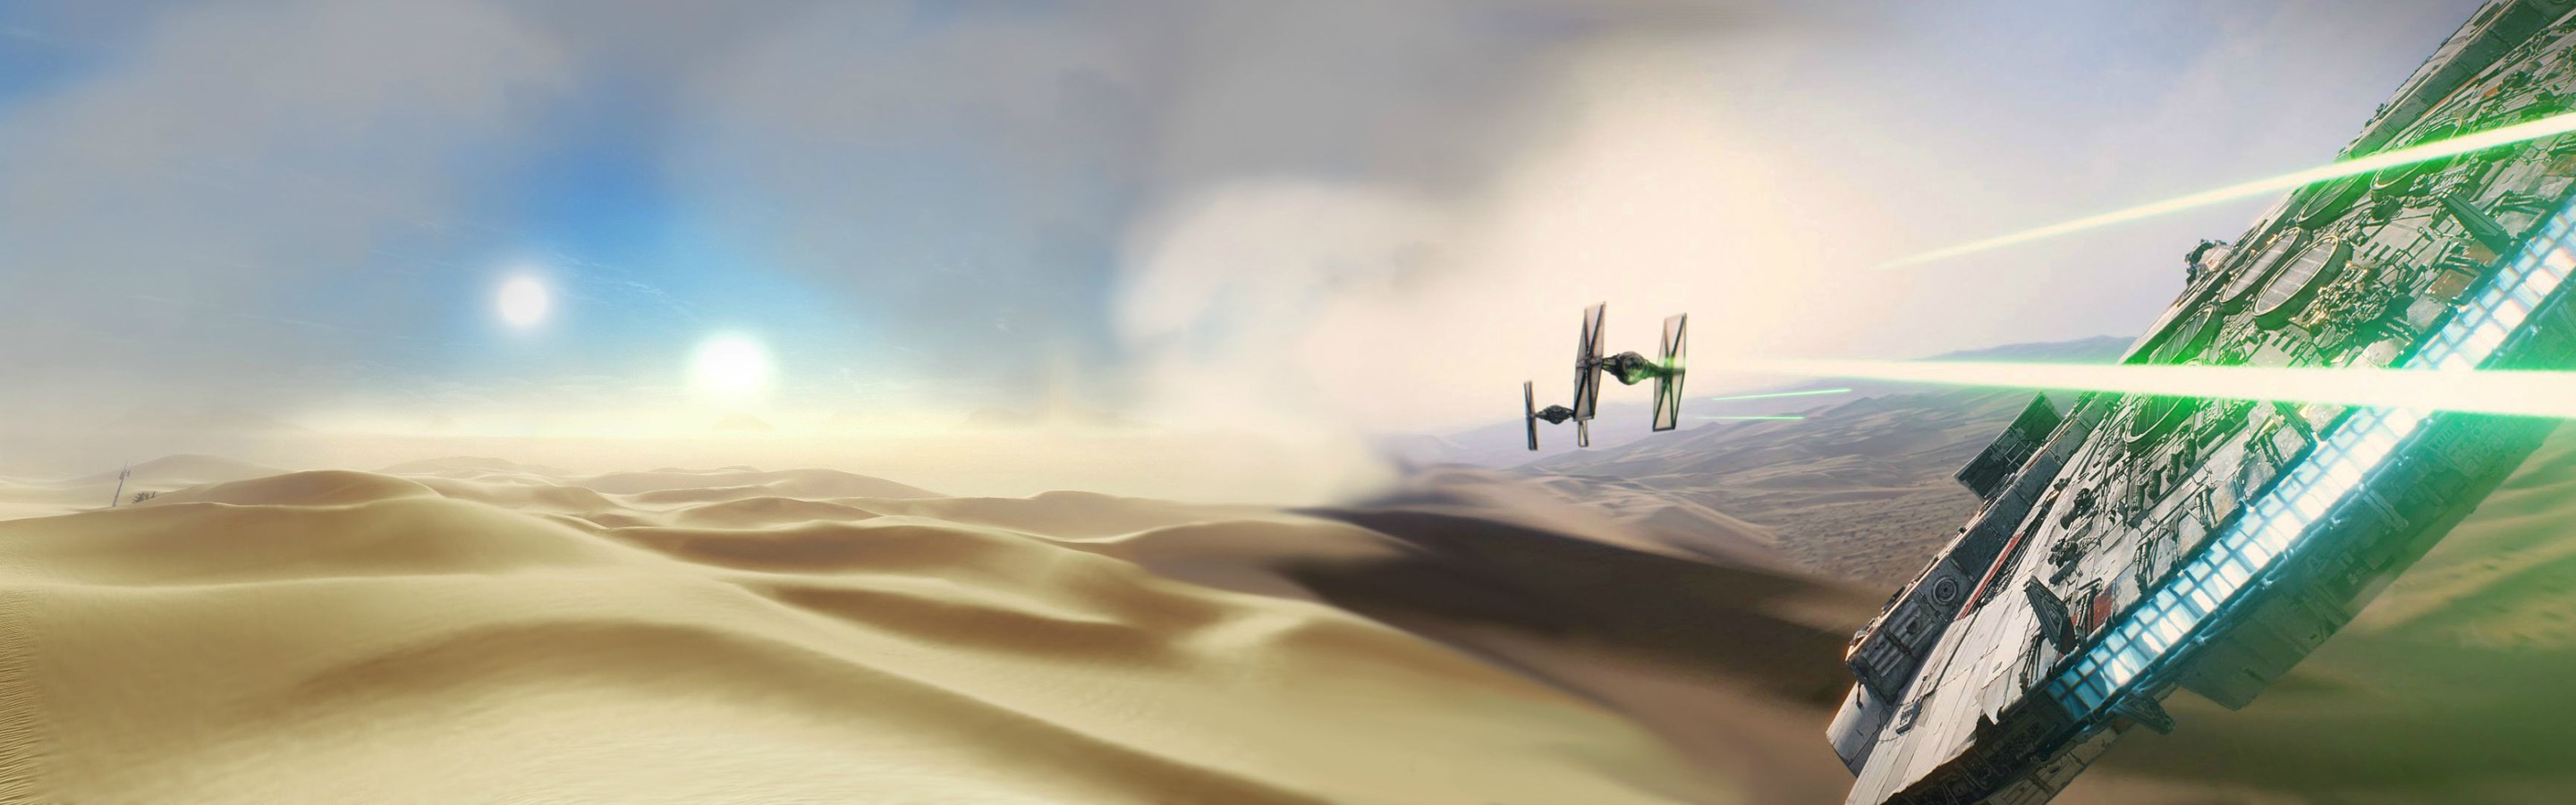 carta da parati con doppio monitor,deserto,cielo,paesaggio,sabbia,immagine dello schermo